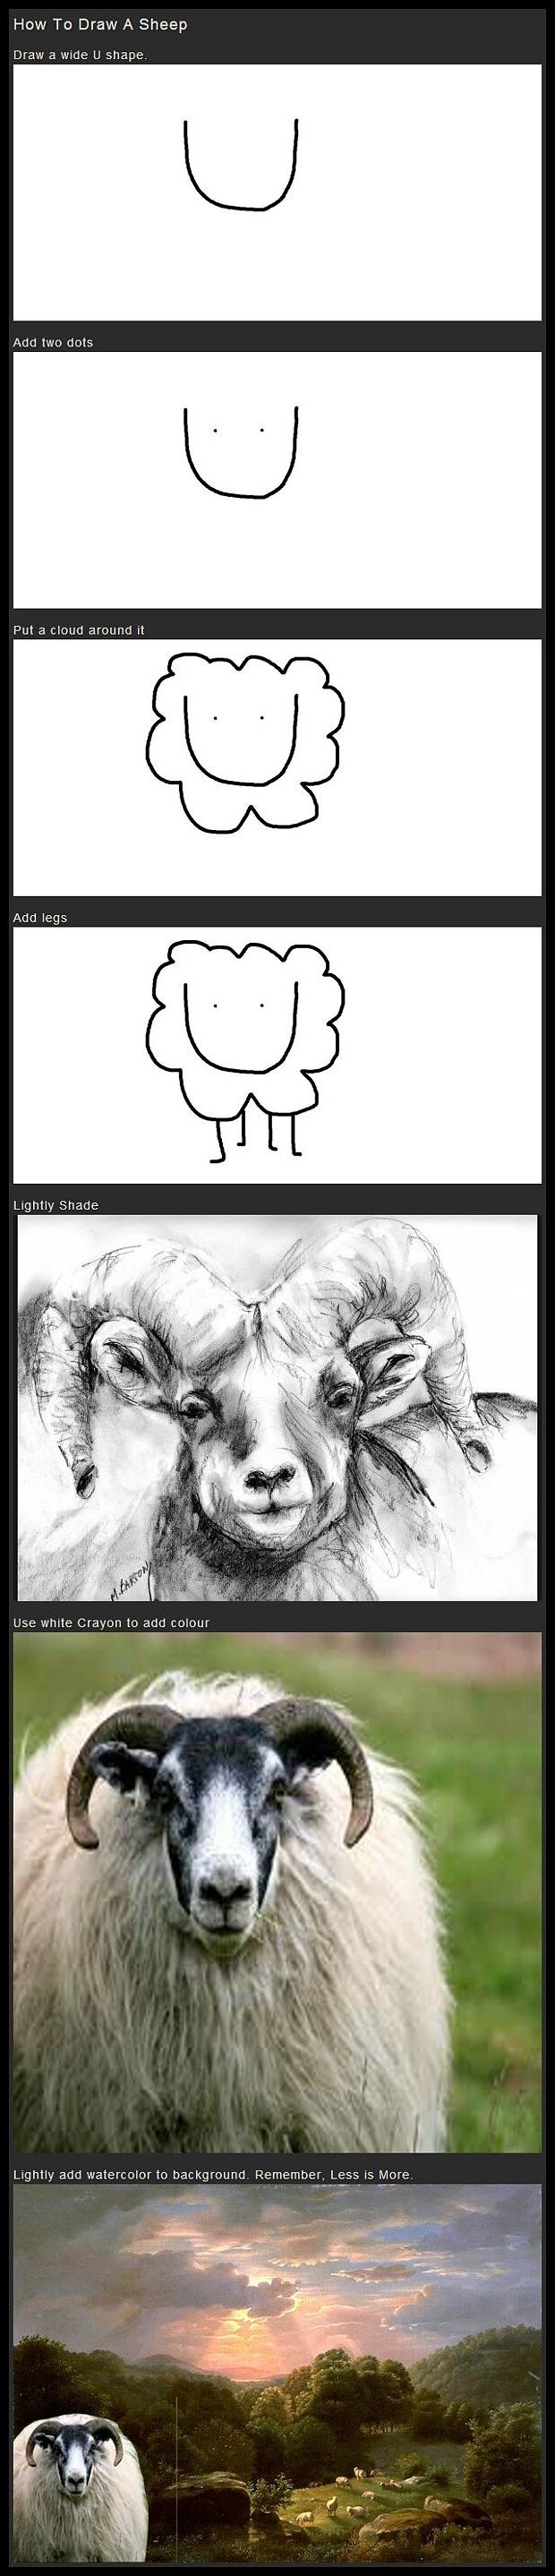 Obrázek - How to draw a sheep -      22.07.2013